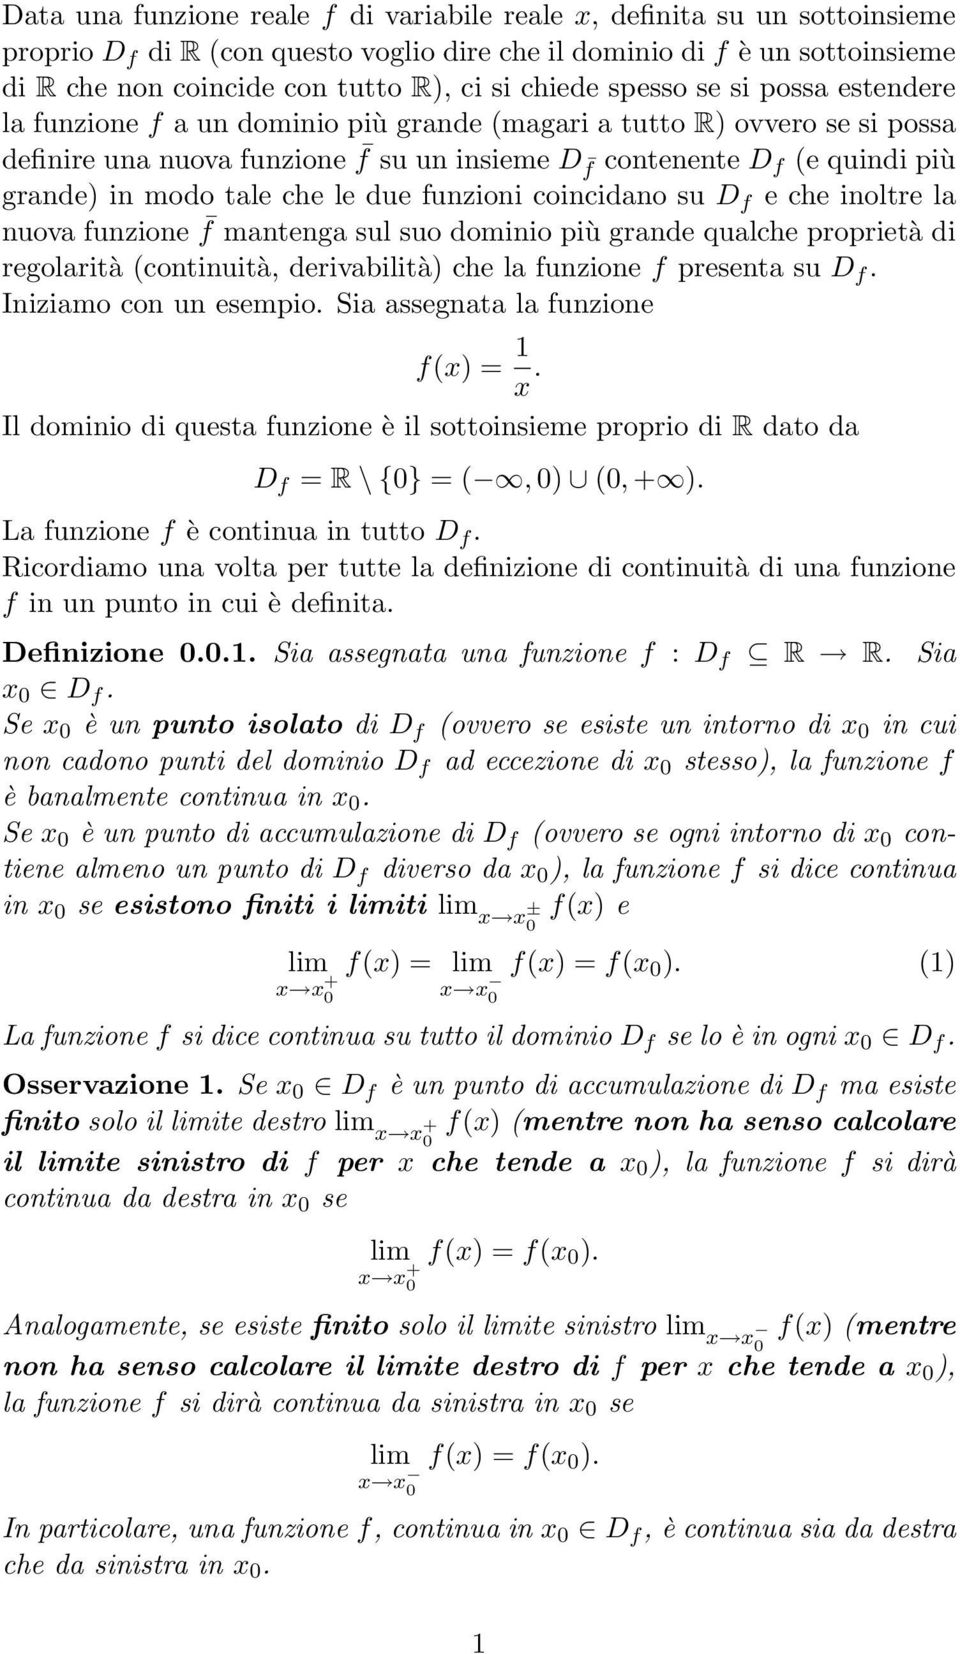 modo tale che le due funzioni coincidano su D f e che inoltre la nuova funzione f mantenga sul suo dominio più grande qualche proprietà di regolarità (continuità, derivabilità) che la funzione f